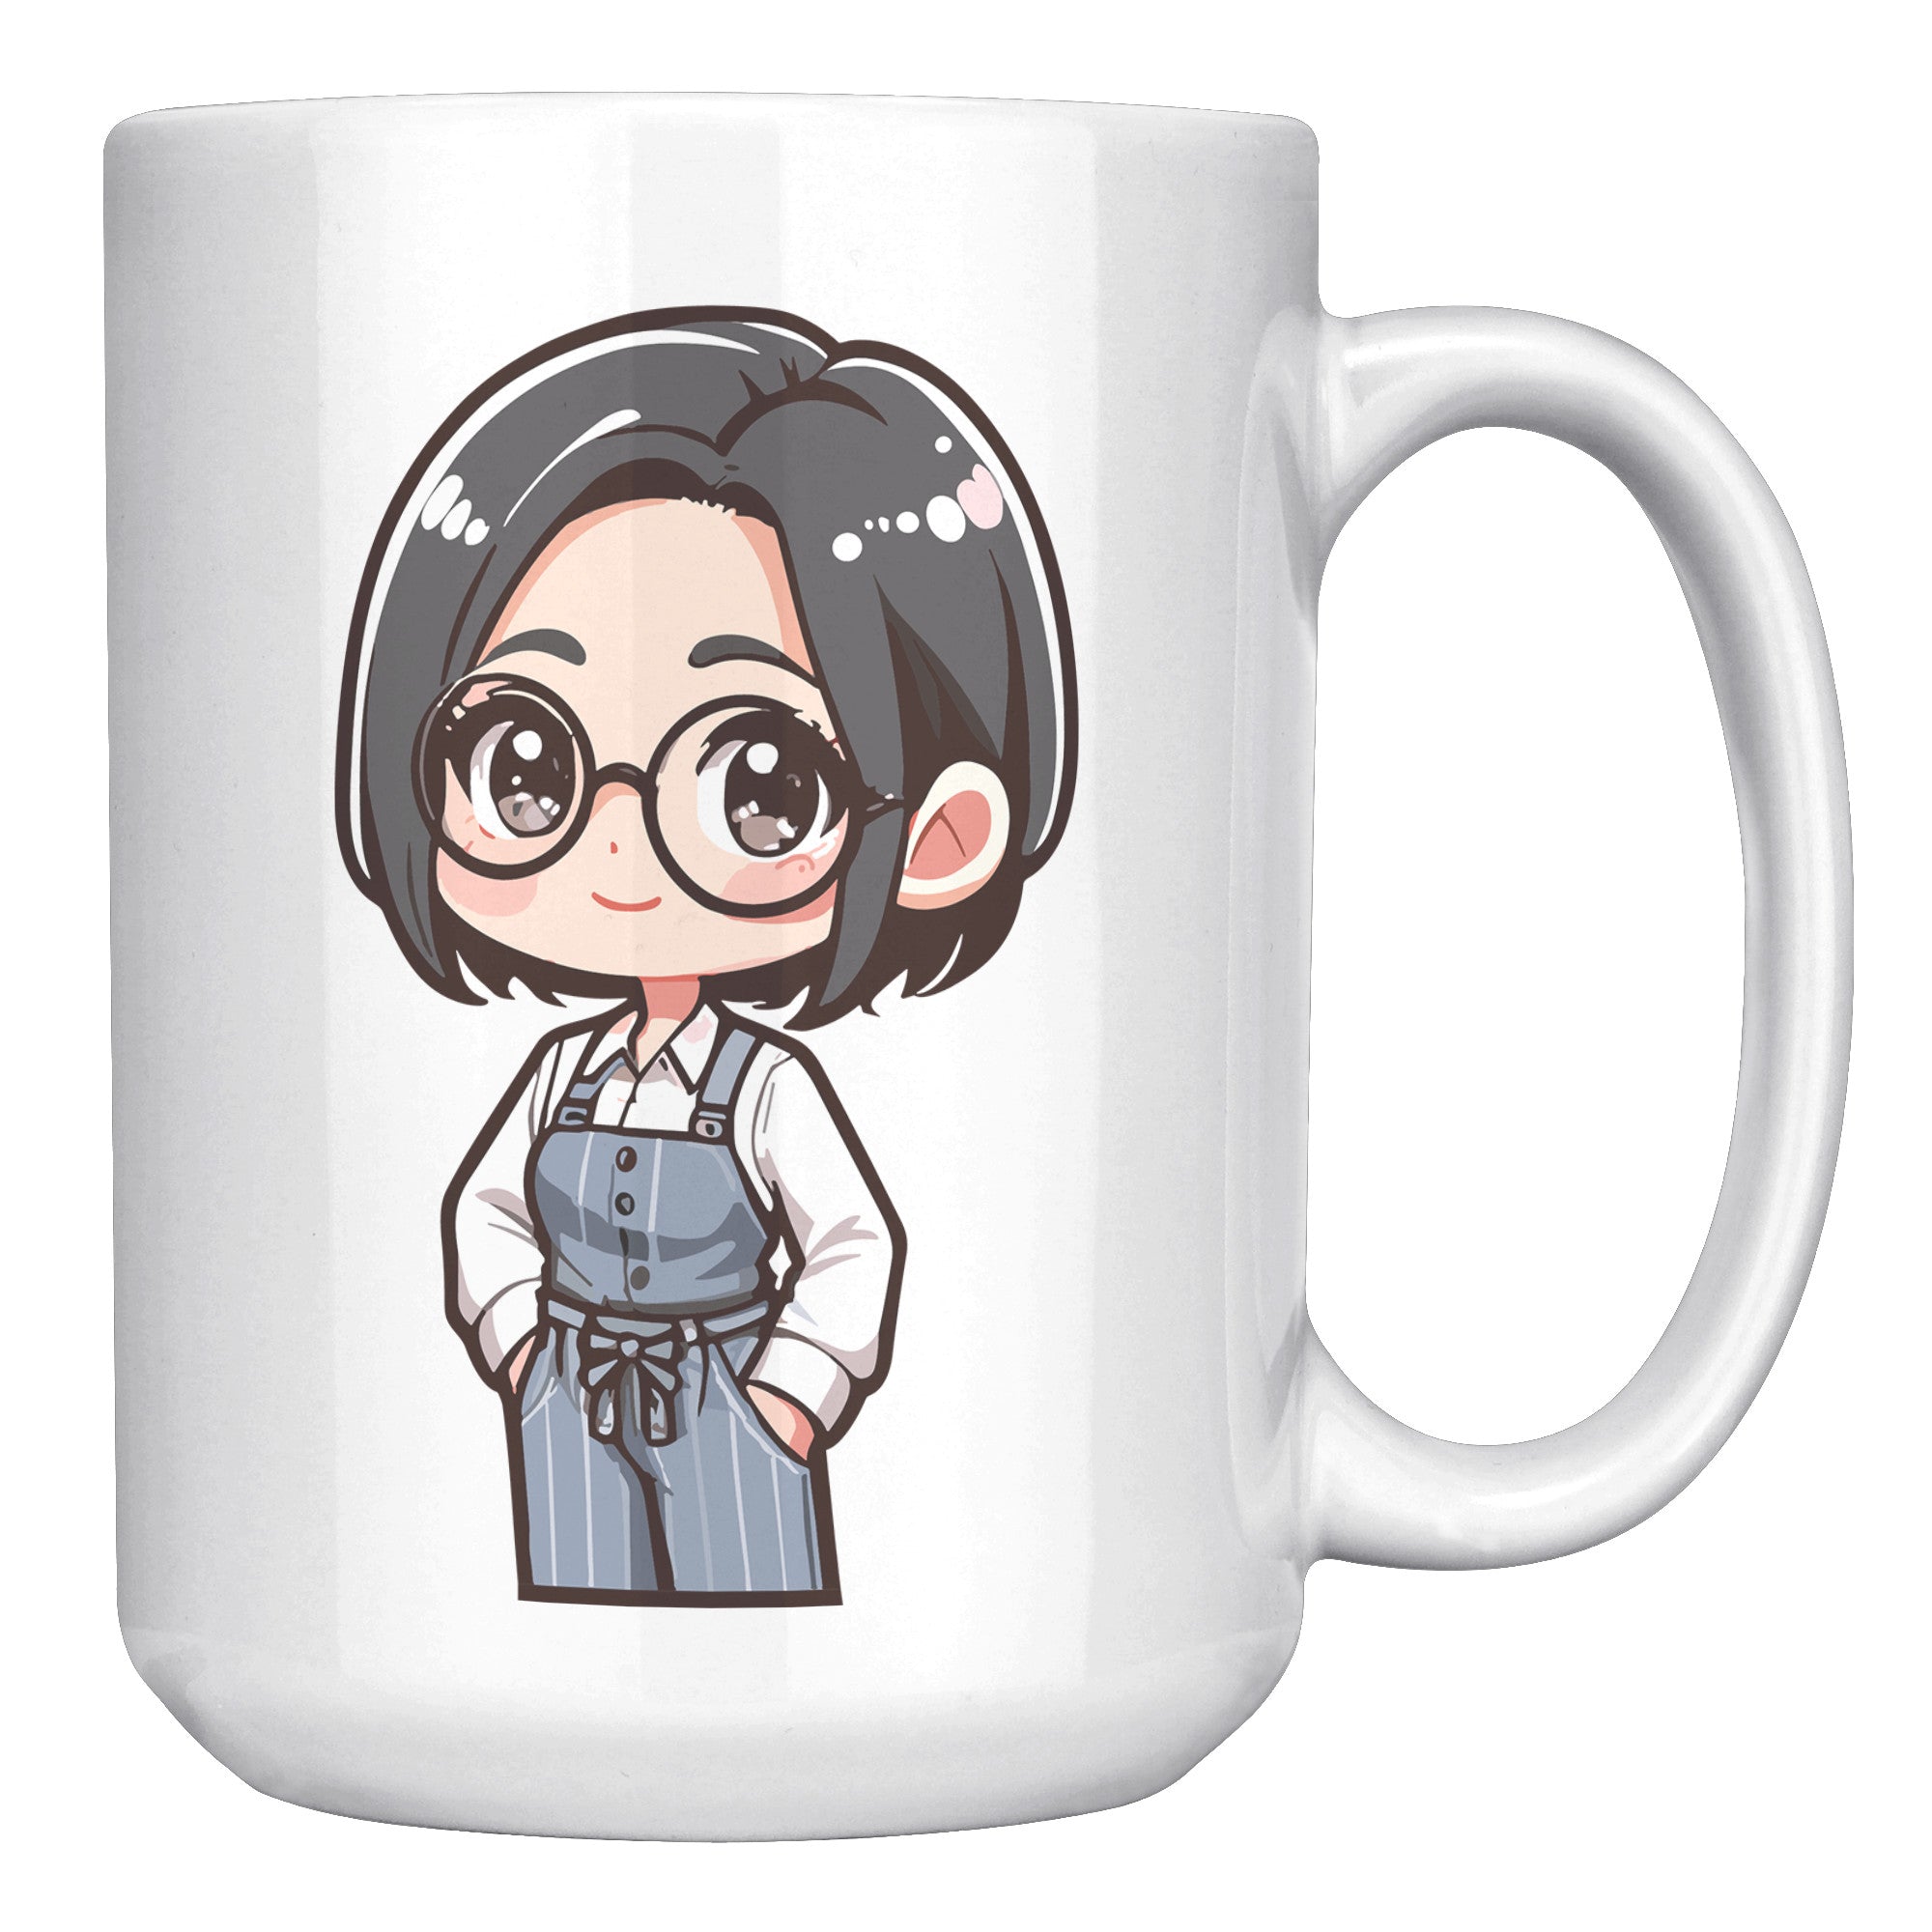 "Marites Gossip Queen Coffee Mug - Cute Cartoon 'Ano Ang Latest?' Cup - Perfect Chismosa Gift - Filipino Slang Tea Mug" - G1